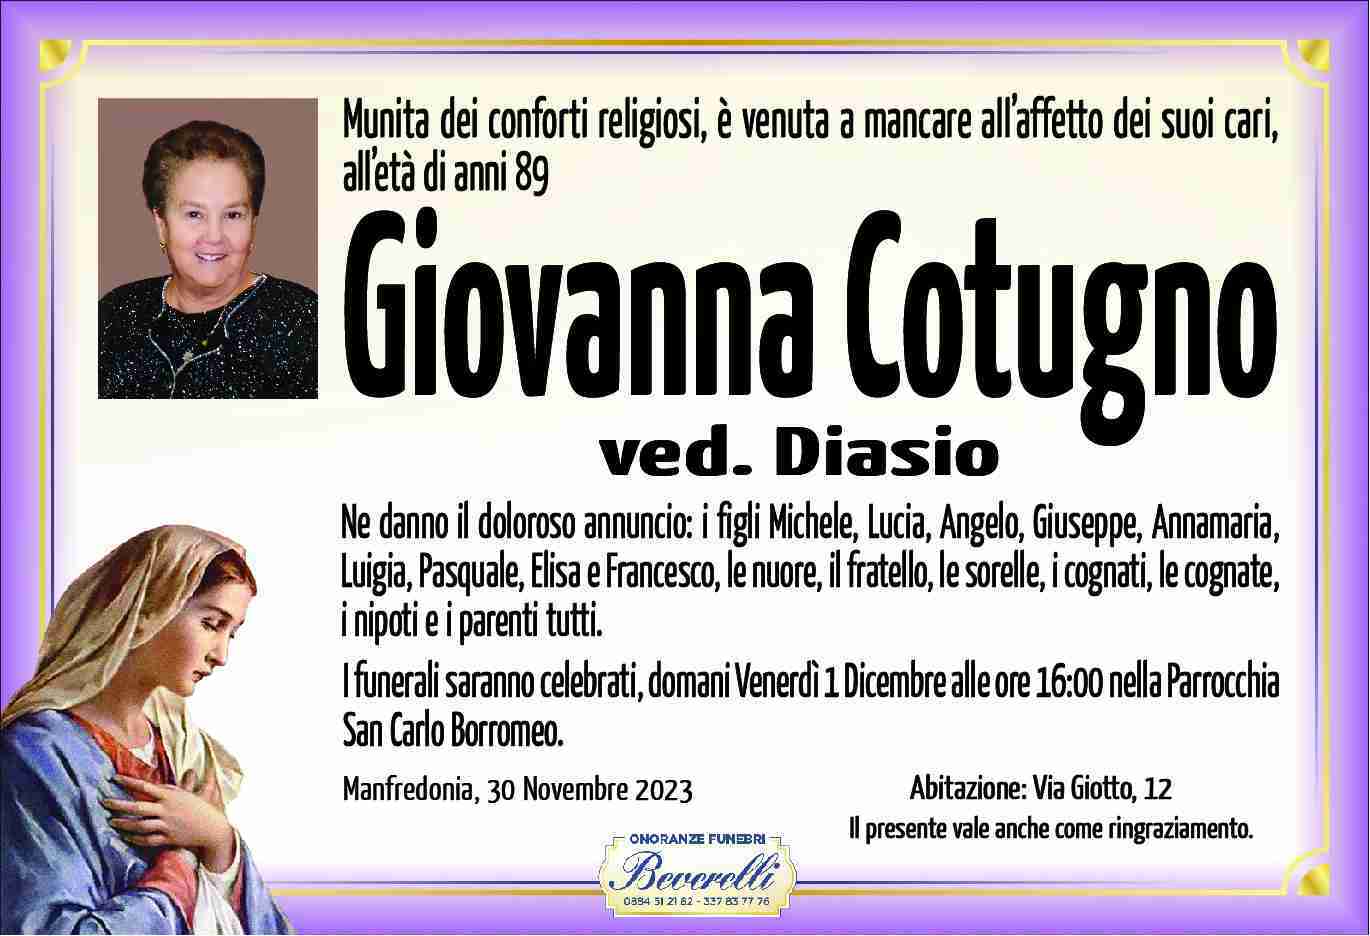 Giovanna Cotugno